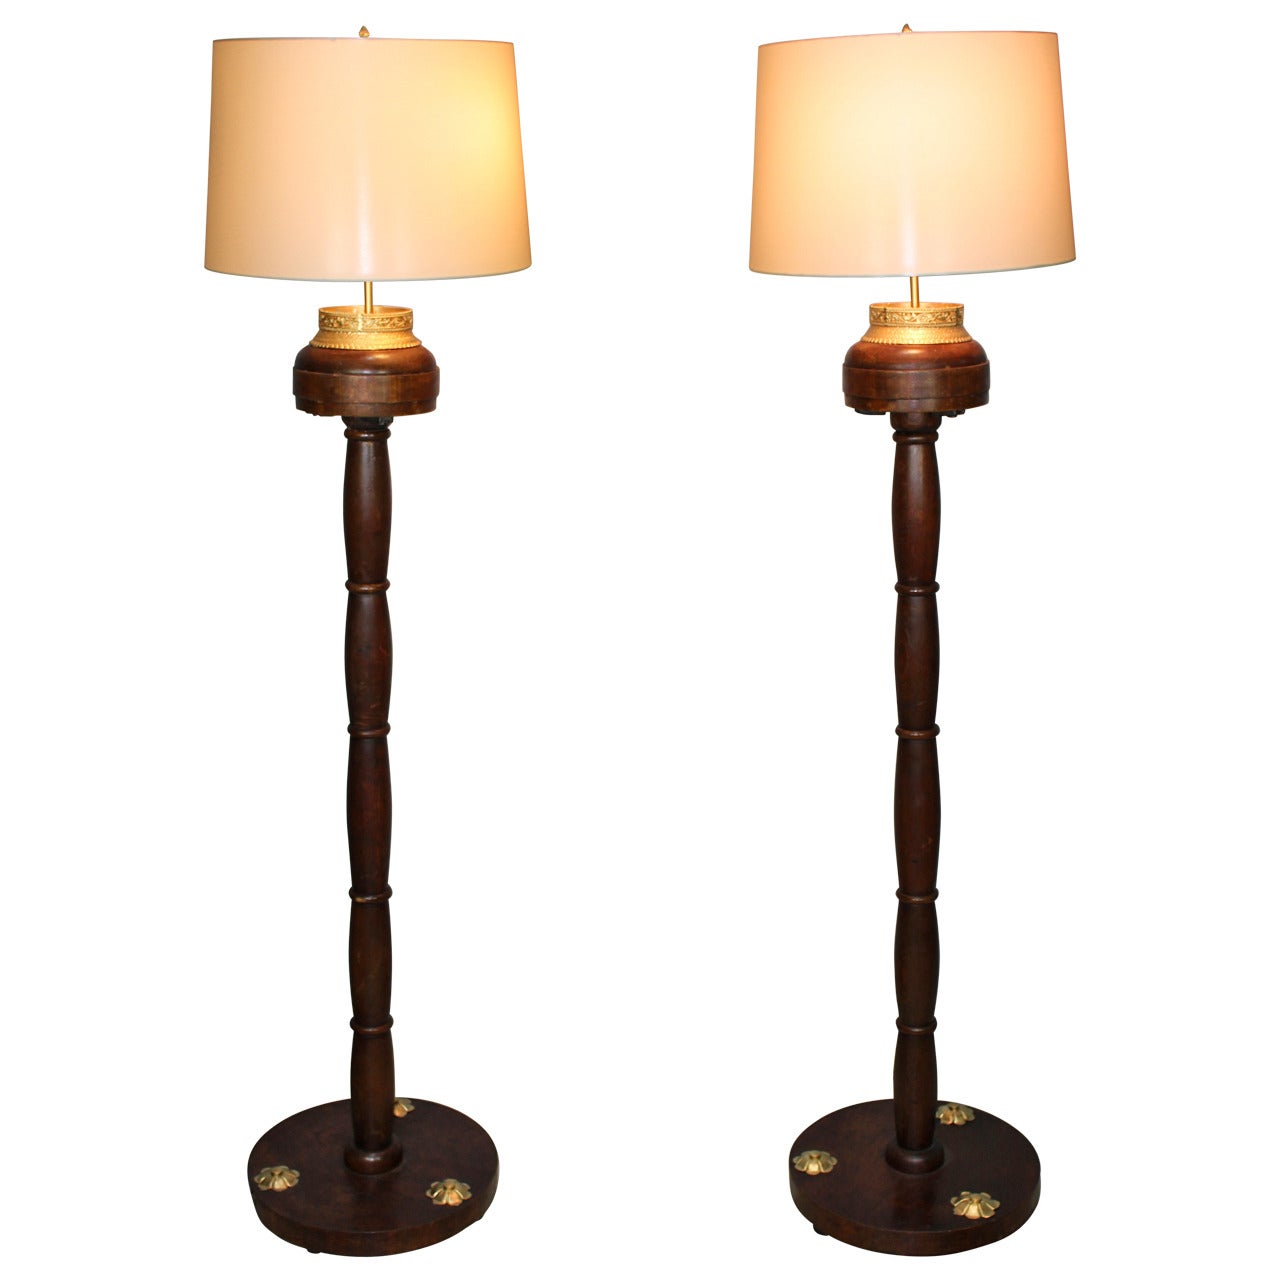 French Art Deco Floor Lamps